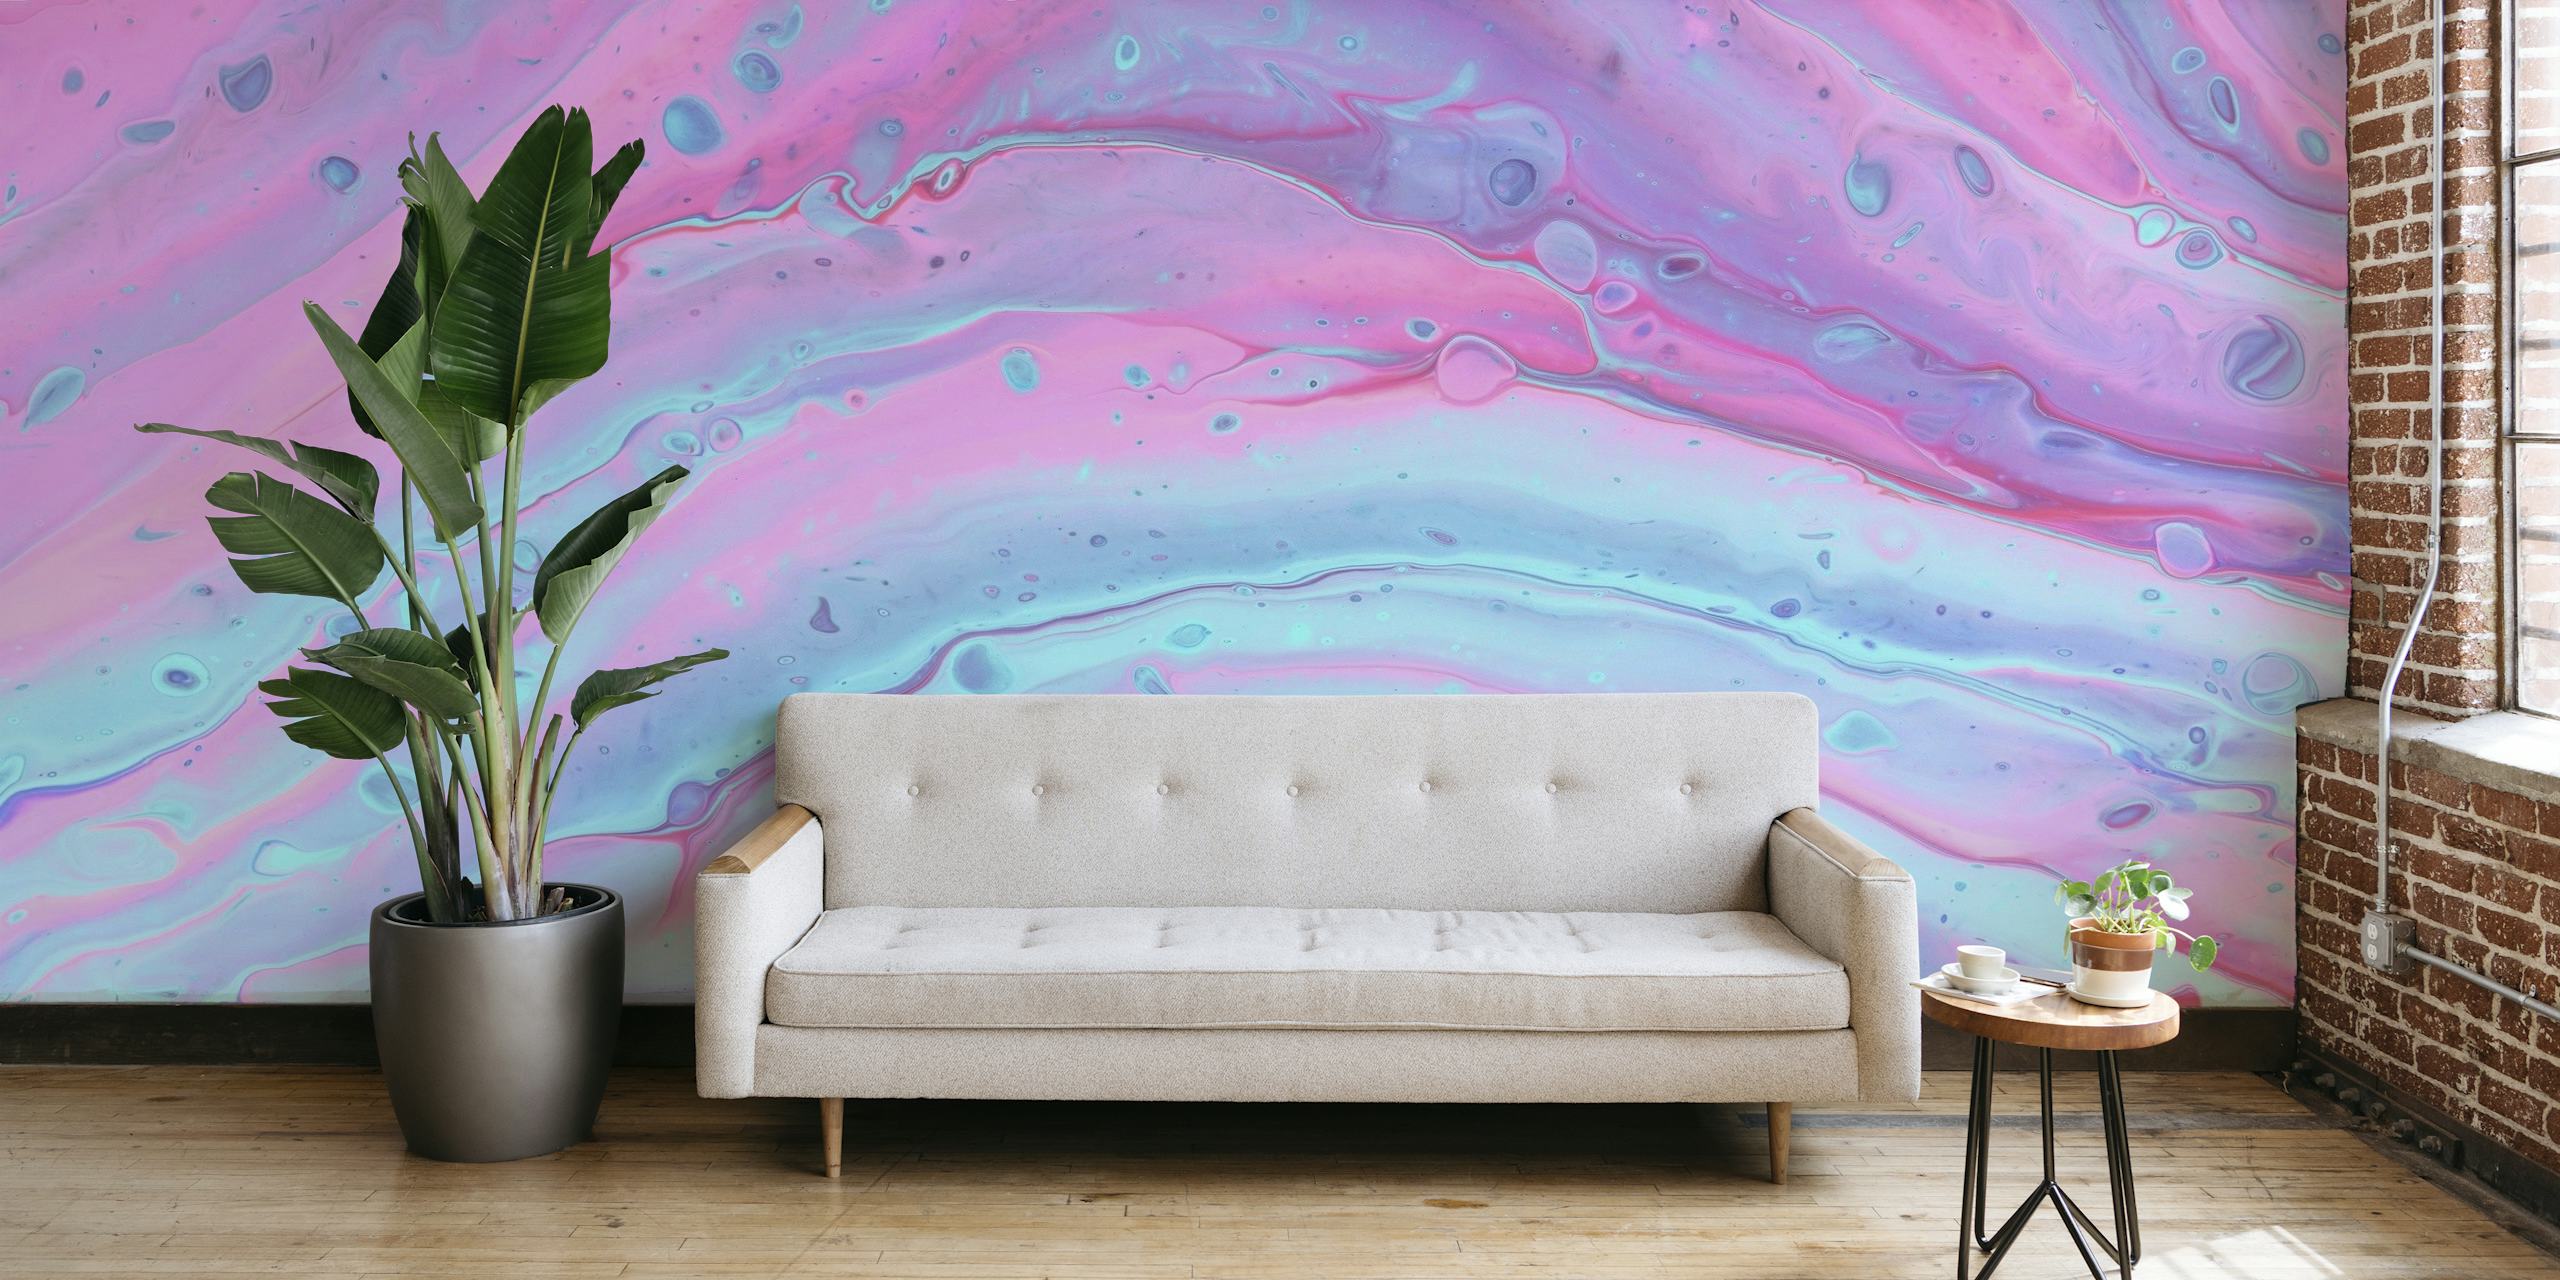 Vibrant liquid marble tapetit